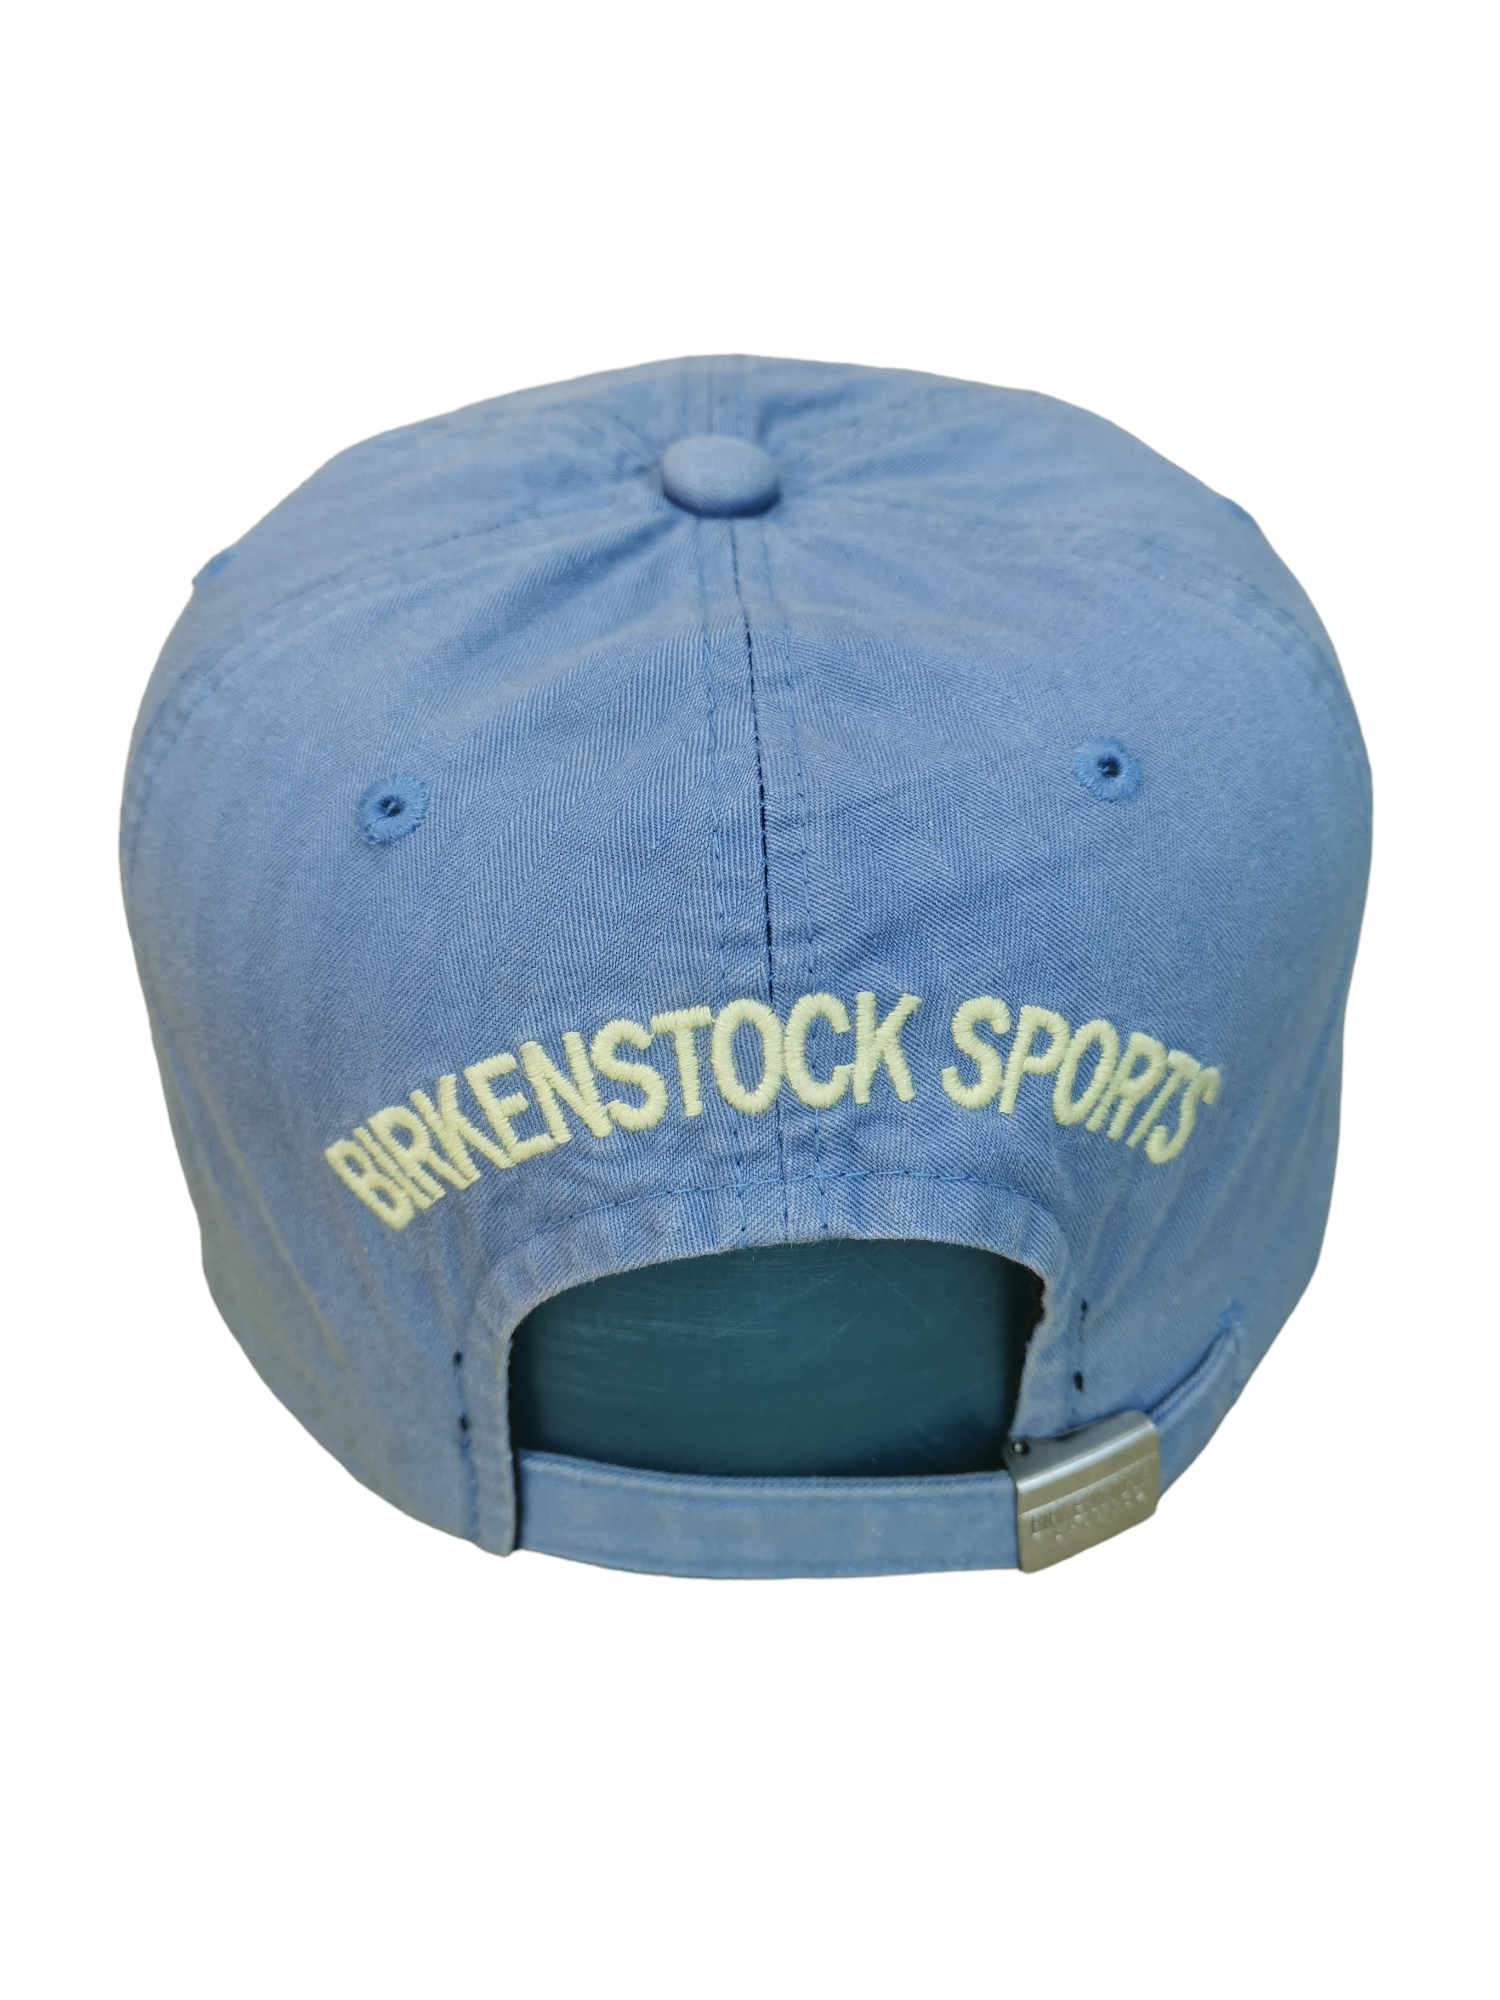 BIRKENSTOCK BRAND STREETWEAR HAT CAP - 3